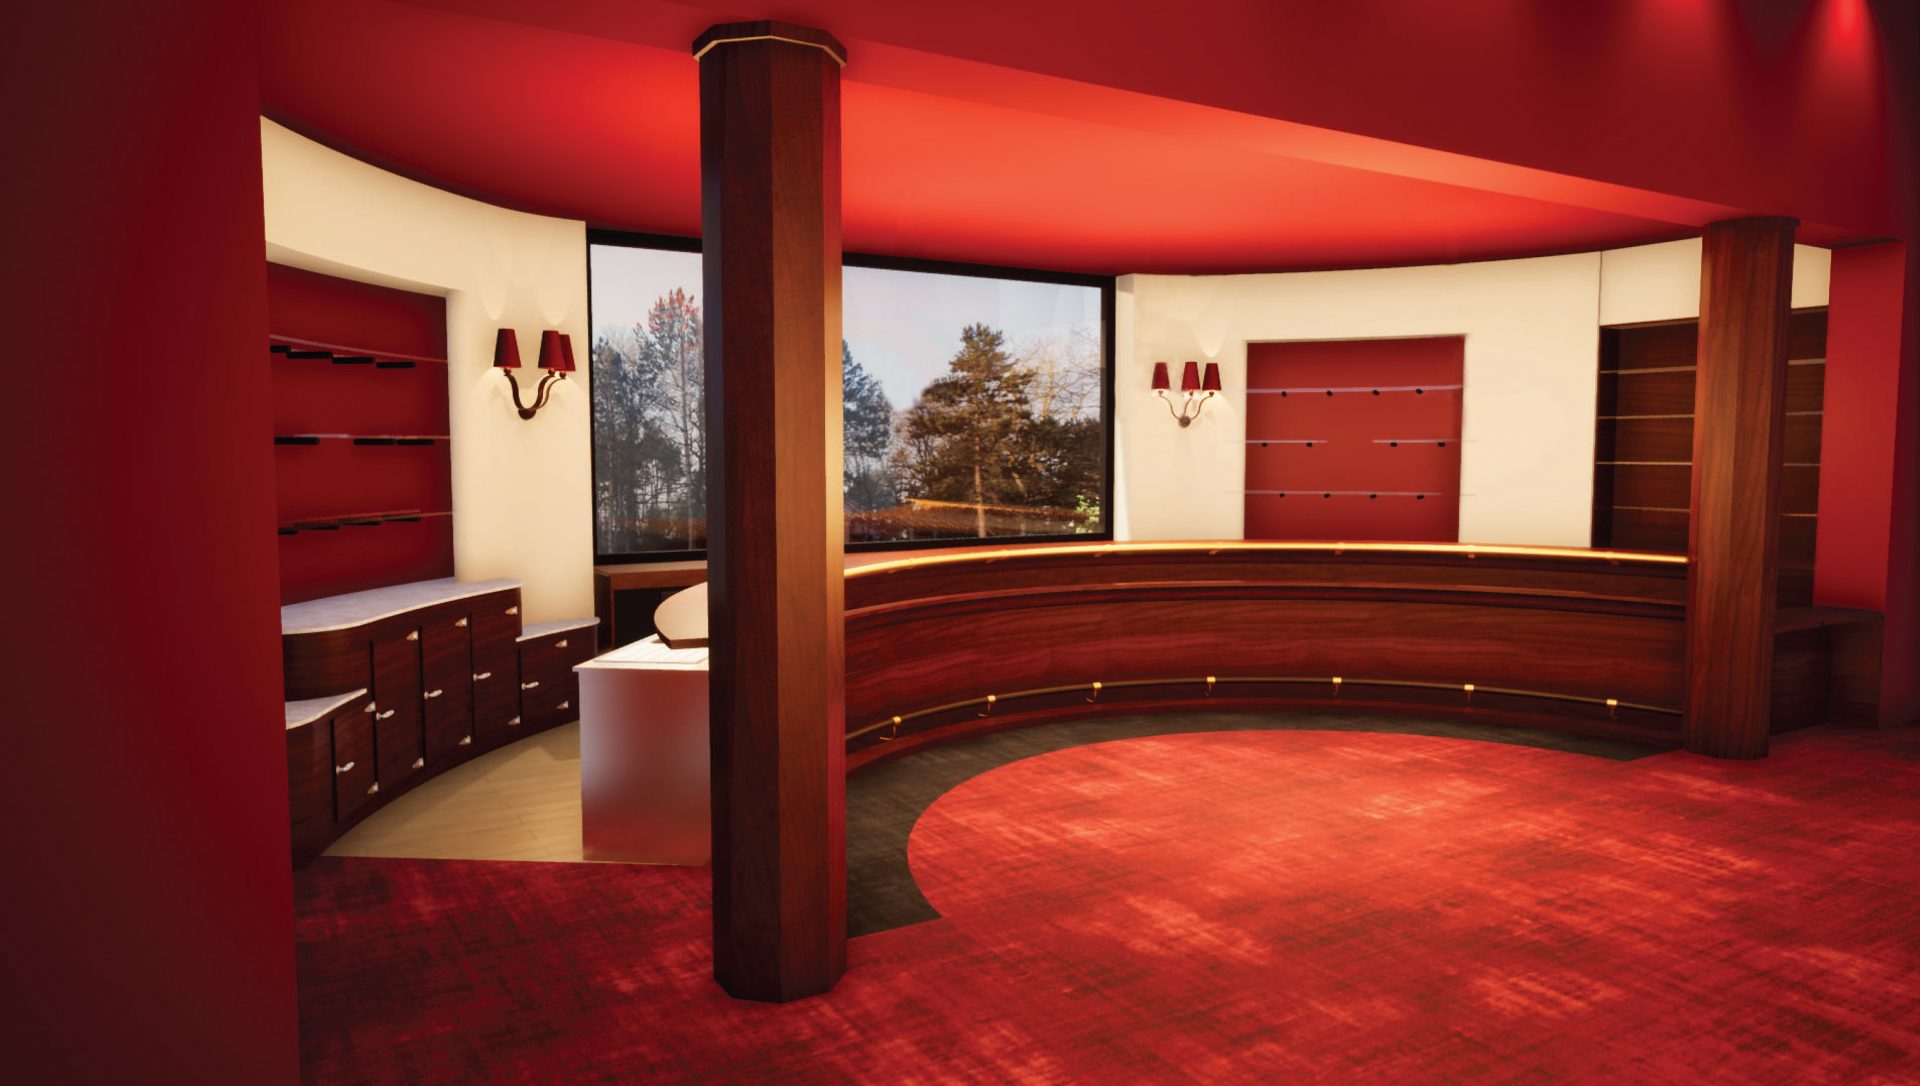 Louer Molière + Salon rouge space Vous souhaitez proposer à vos invités une réception plus prestigieuse encore ? 

Il vous est possible de louer le Salon Rouge en complément de la Salle Molière.

Vous disposez ainsi de 210m2 supplémentaires , avec espace
bar le tout équipé de vidéo projecteur laser et écran motorisé.